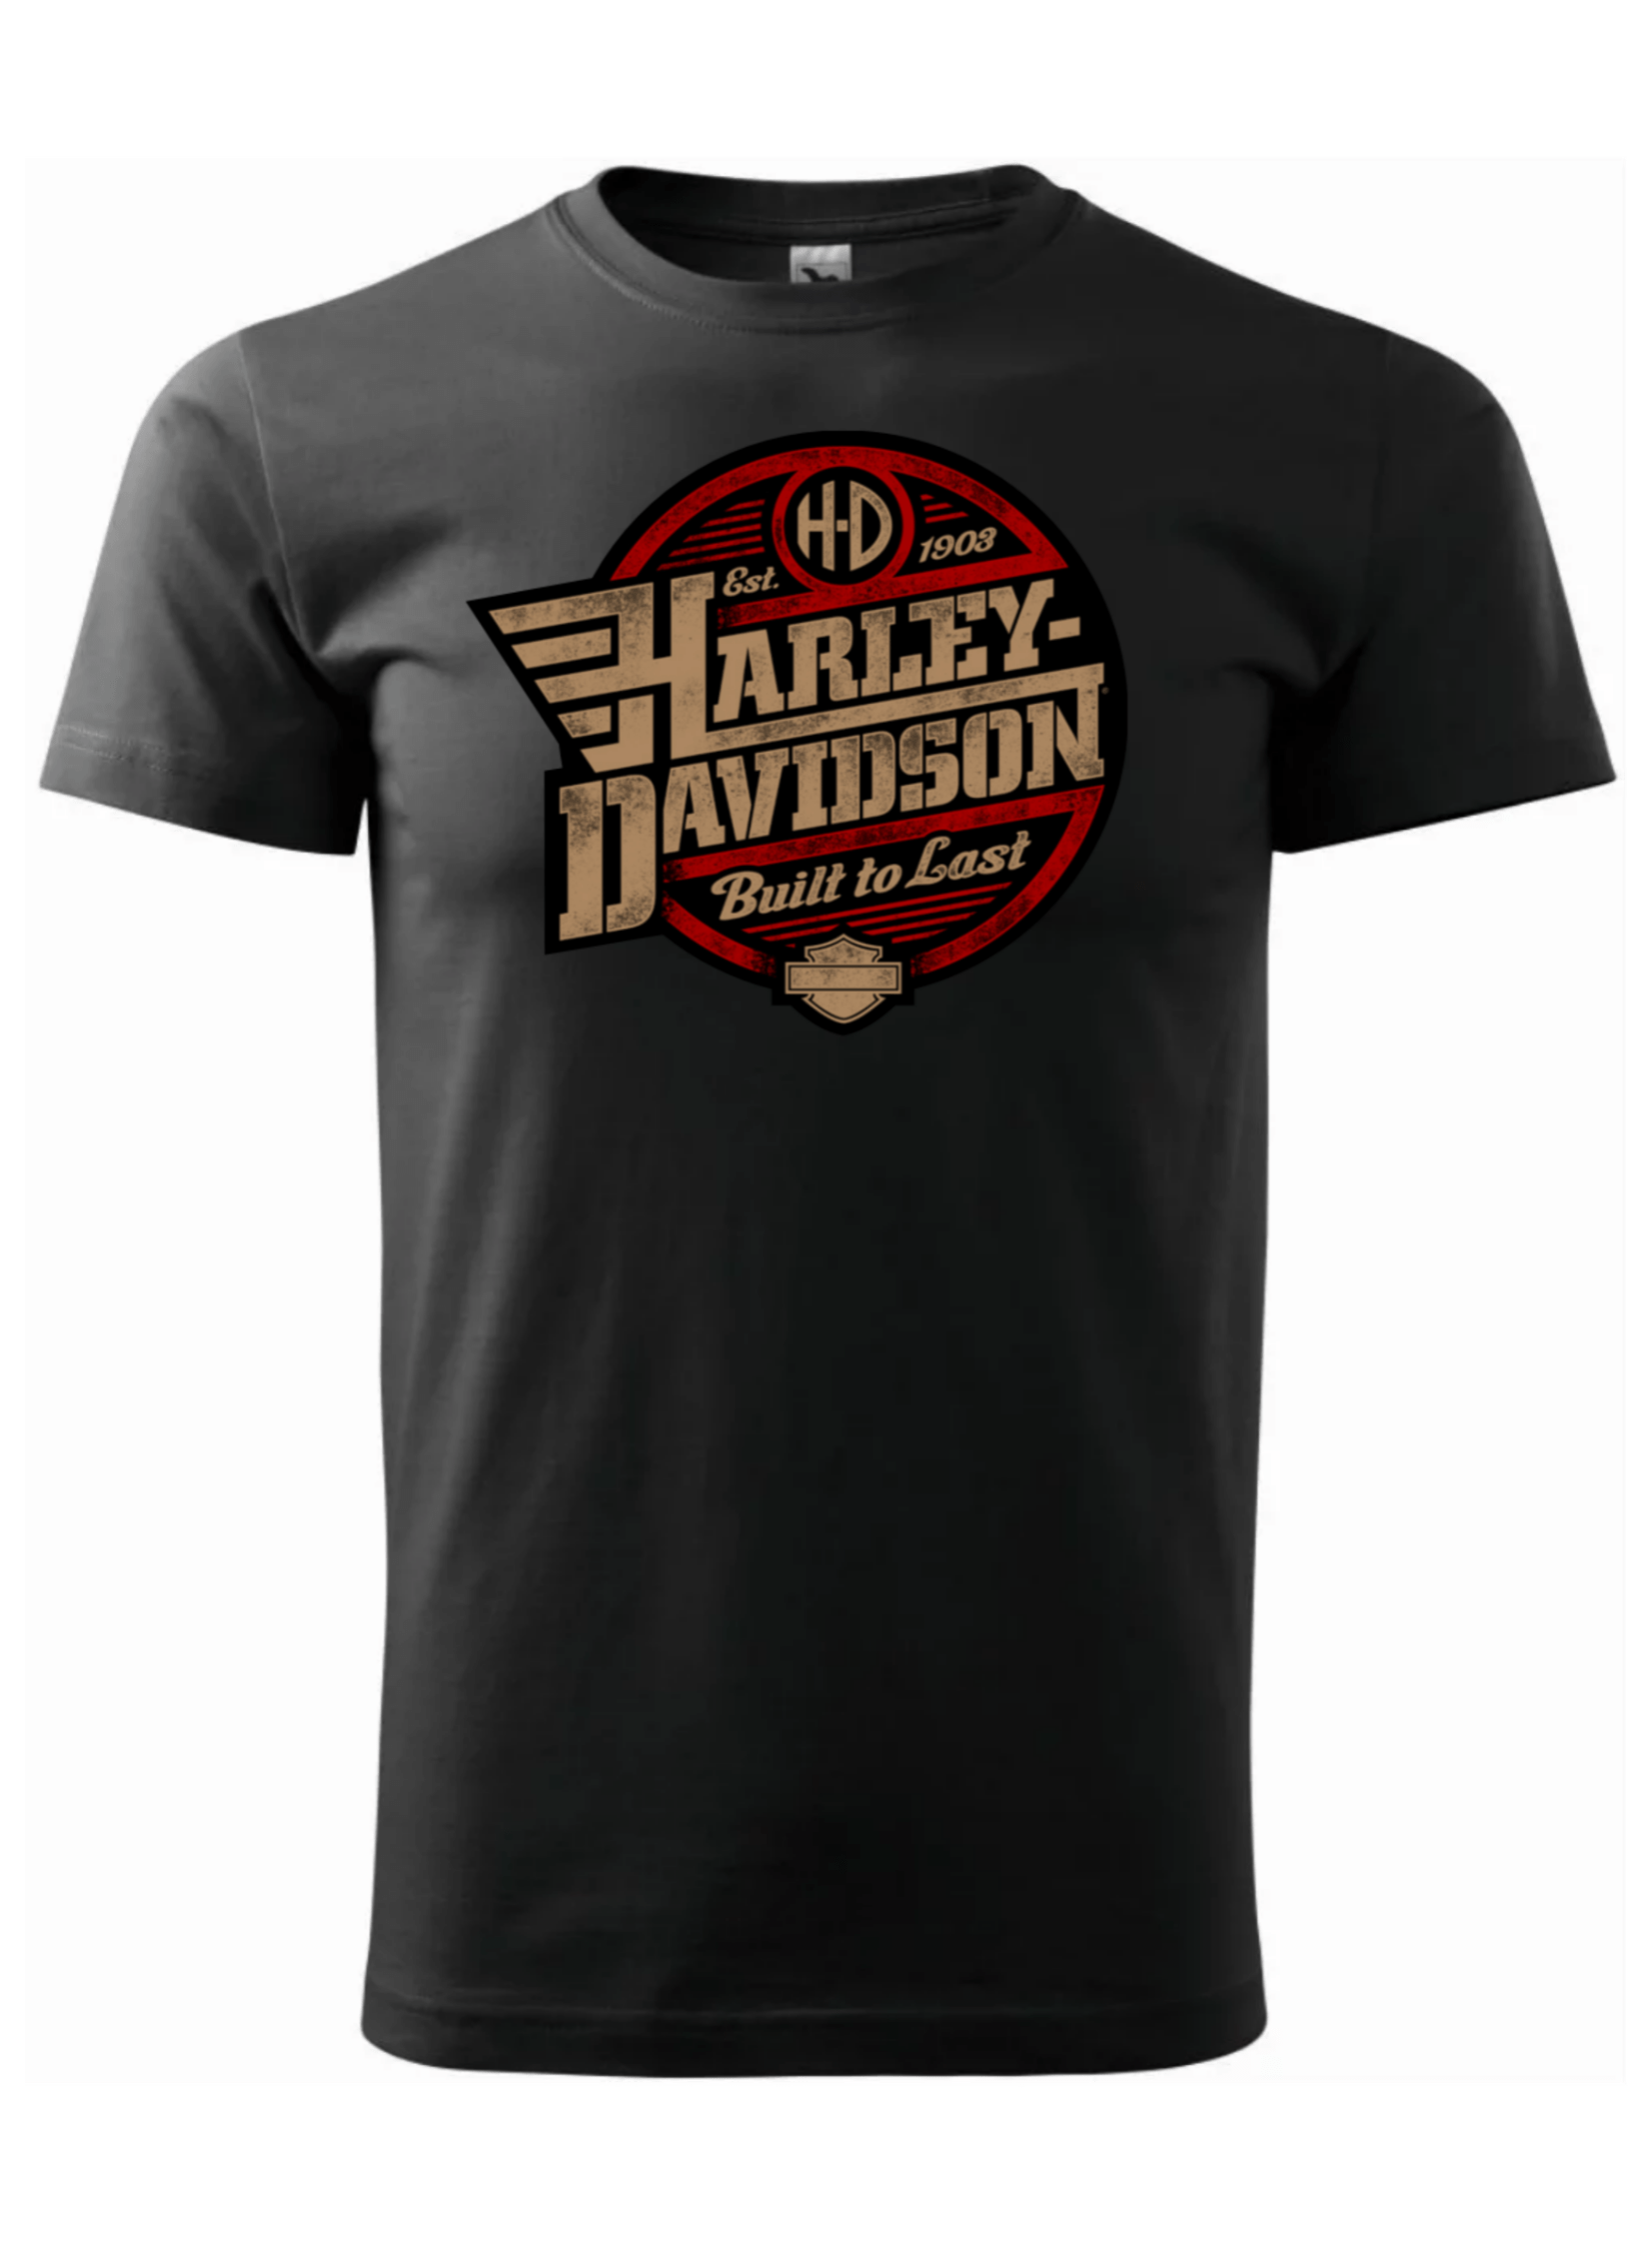 Pánské tričko s potiskem značky Harley Davidson 18